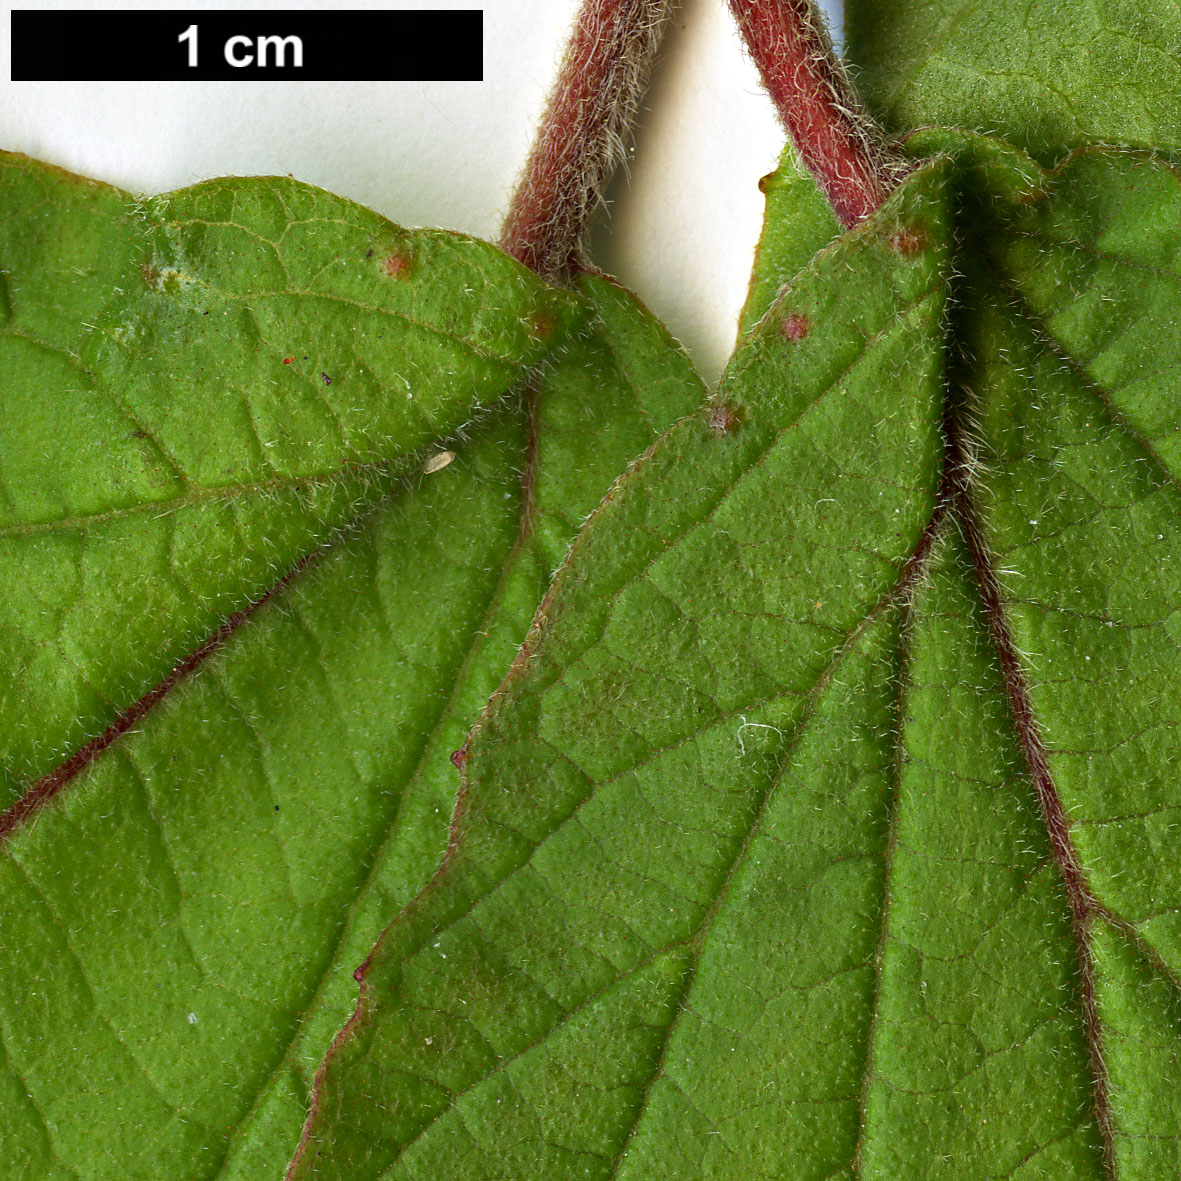 High resolution image: Family: Adoxaceae - Genus: Viburnum - Taxon: dilatatum